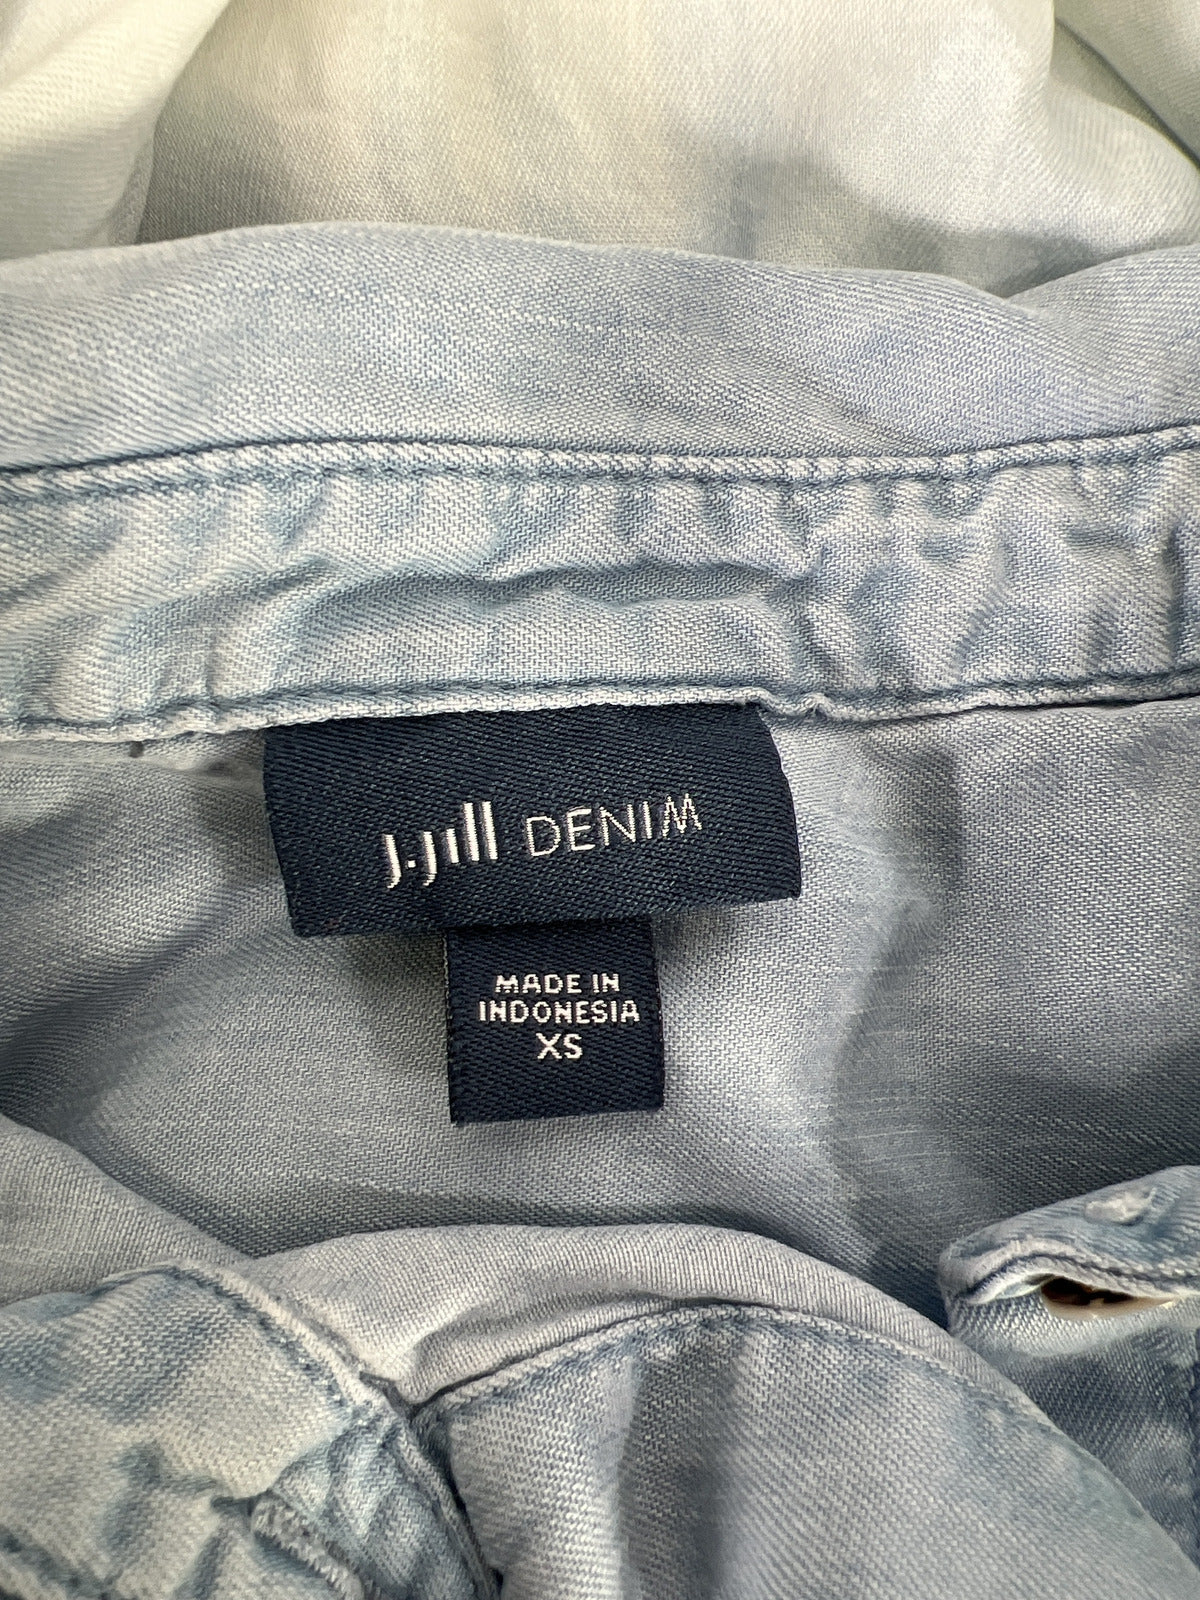 J.Jill Denim Women’s Blue/White Long Sleeve Button Up Shirt - XS